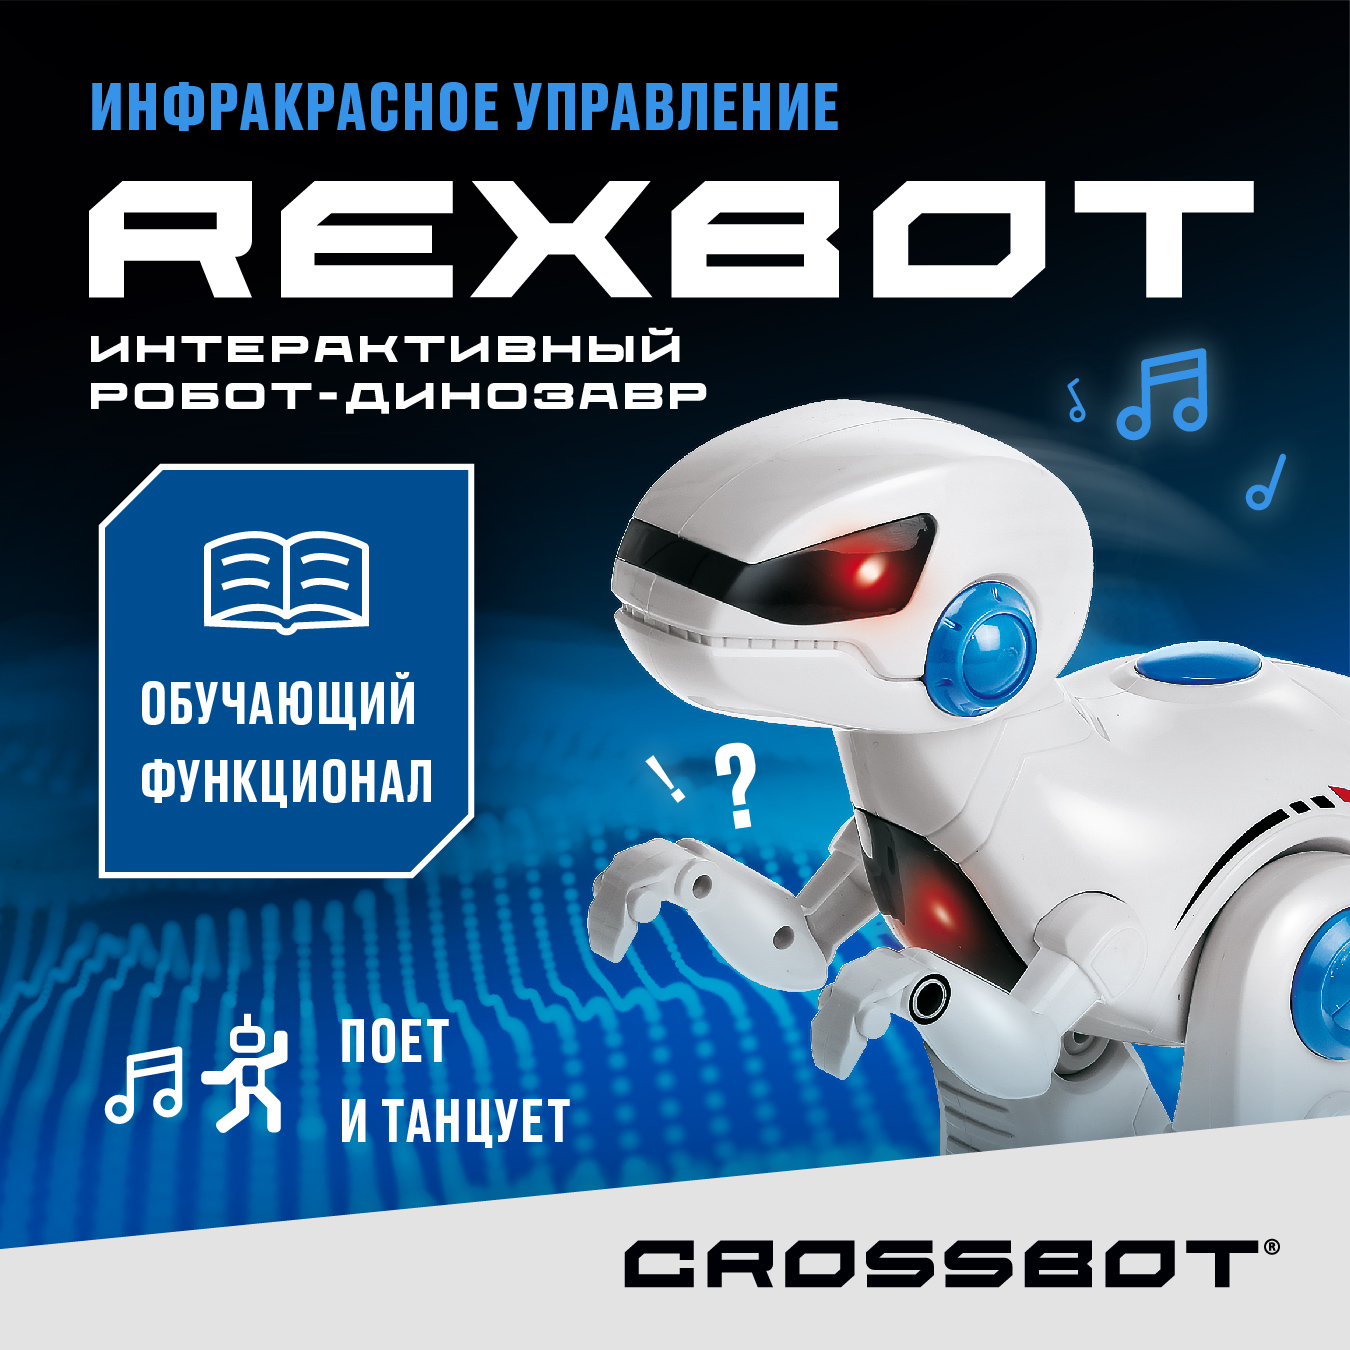 Радиоуправляемая игрушка Робот Динозавр Рекс на пульте Crossbot cute sunlight toys робот паук tarantula на пульте управления